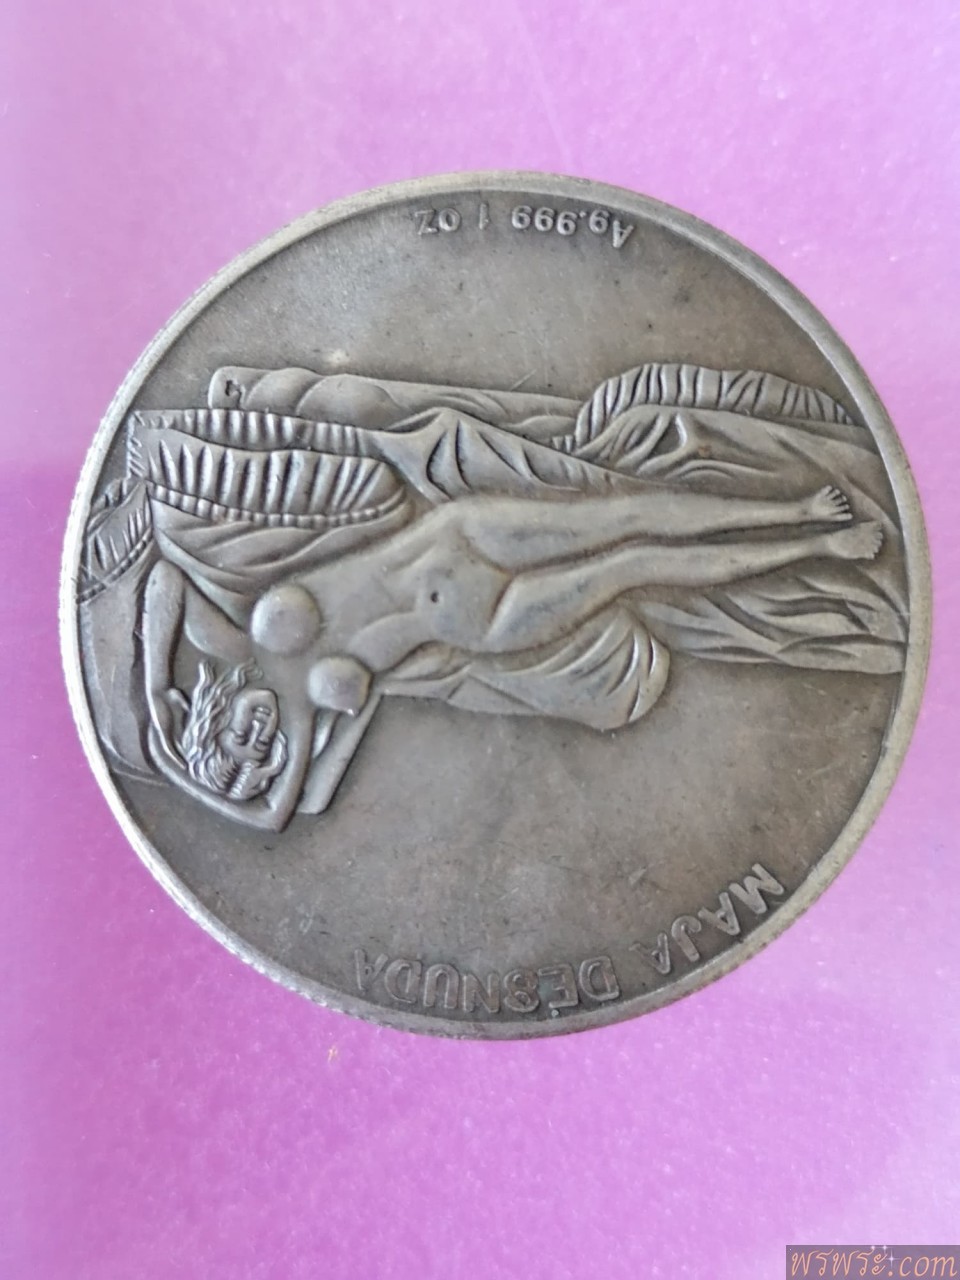 เหรียญ LRONARDO DAVINCI1452 /1519